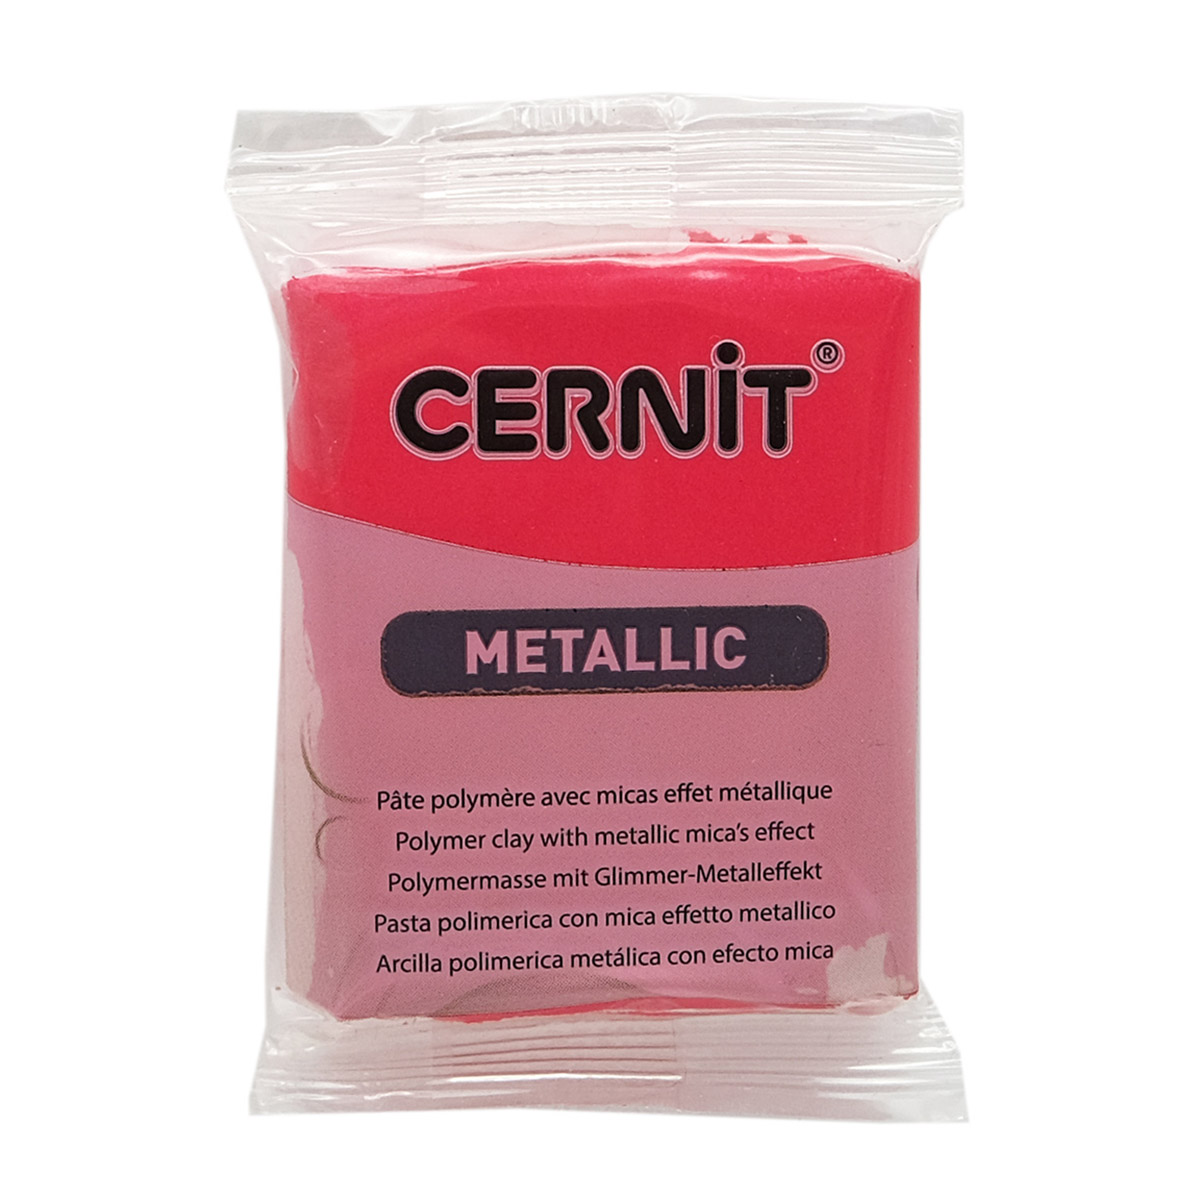 Пластика Cernit Metallic, 56 грамм, цвет 400 красный, арт. CE0870056 наконечник гильза е 1 5 08 медь красный 20 шт 1 5 мм² iek ugn10 4 d15 03 08